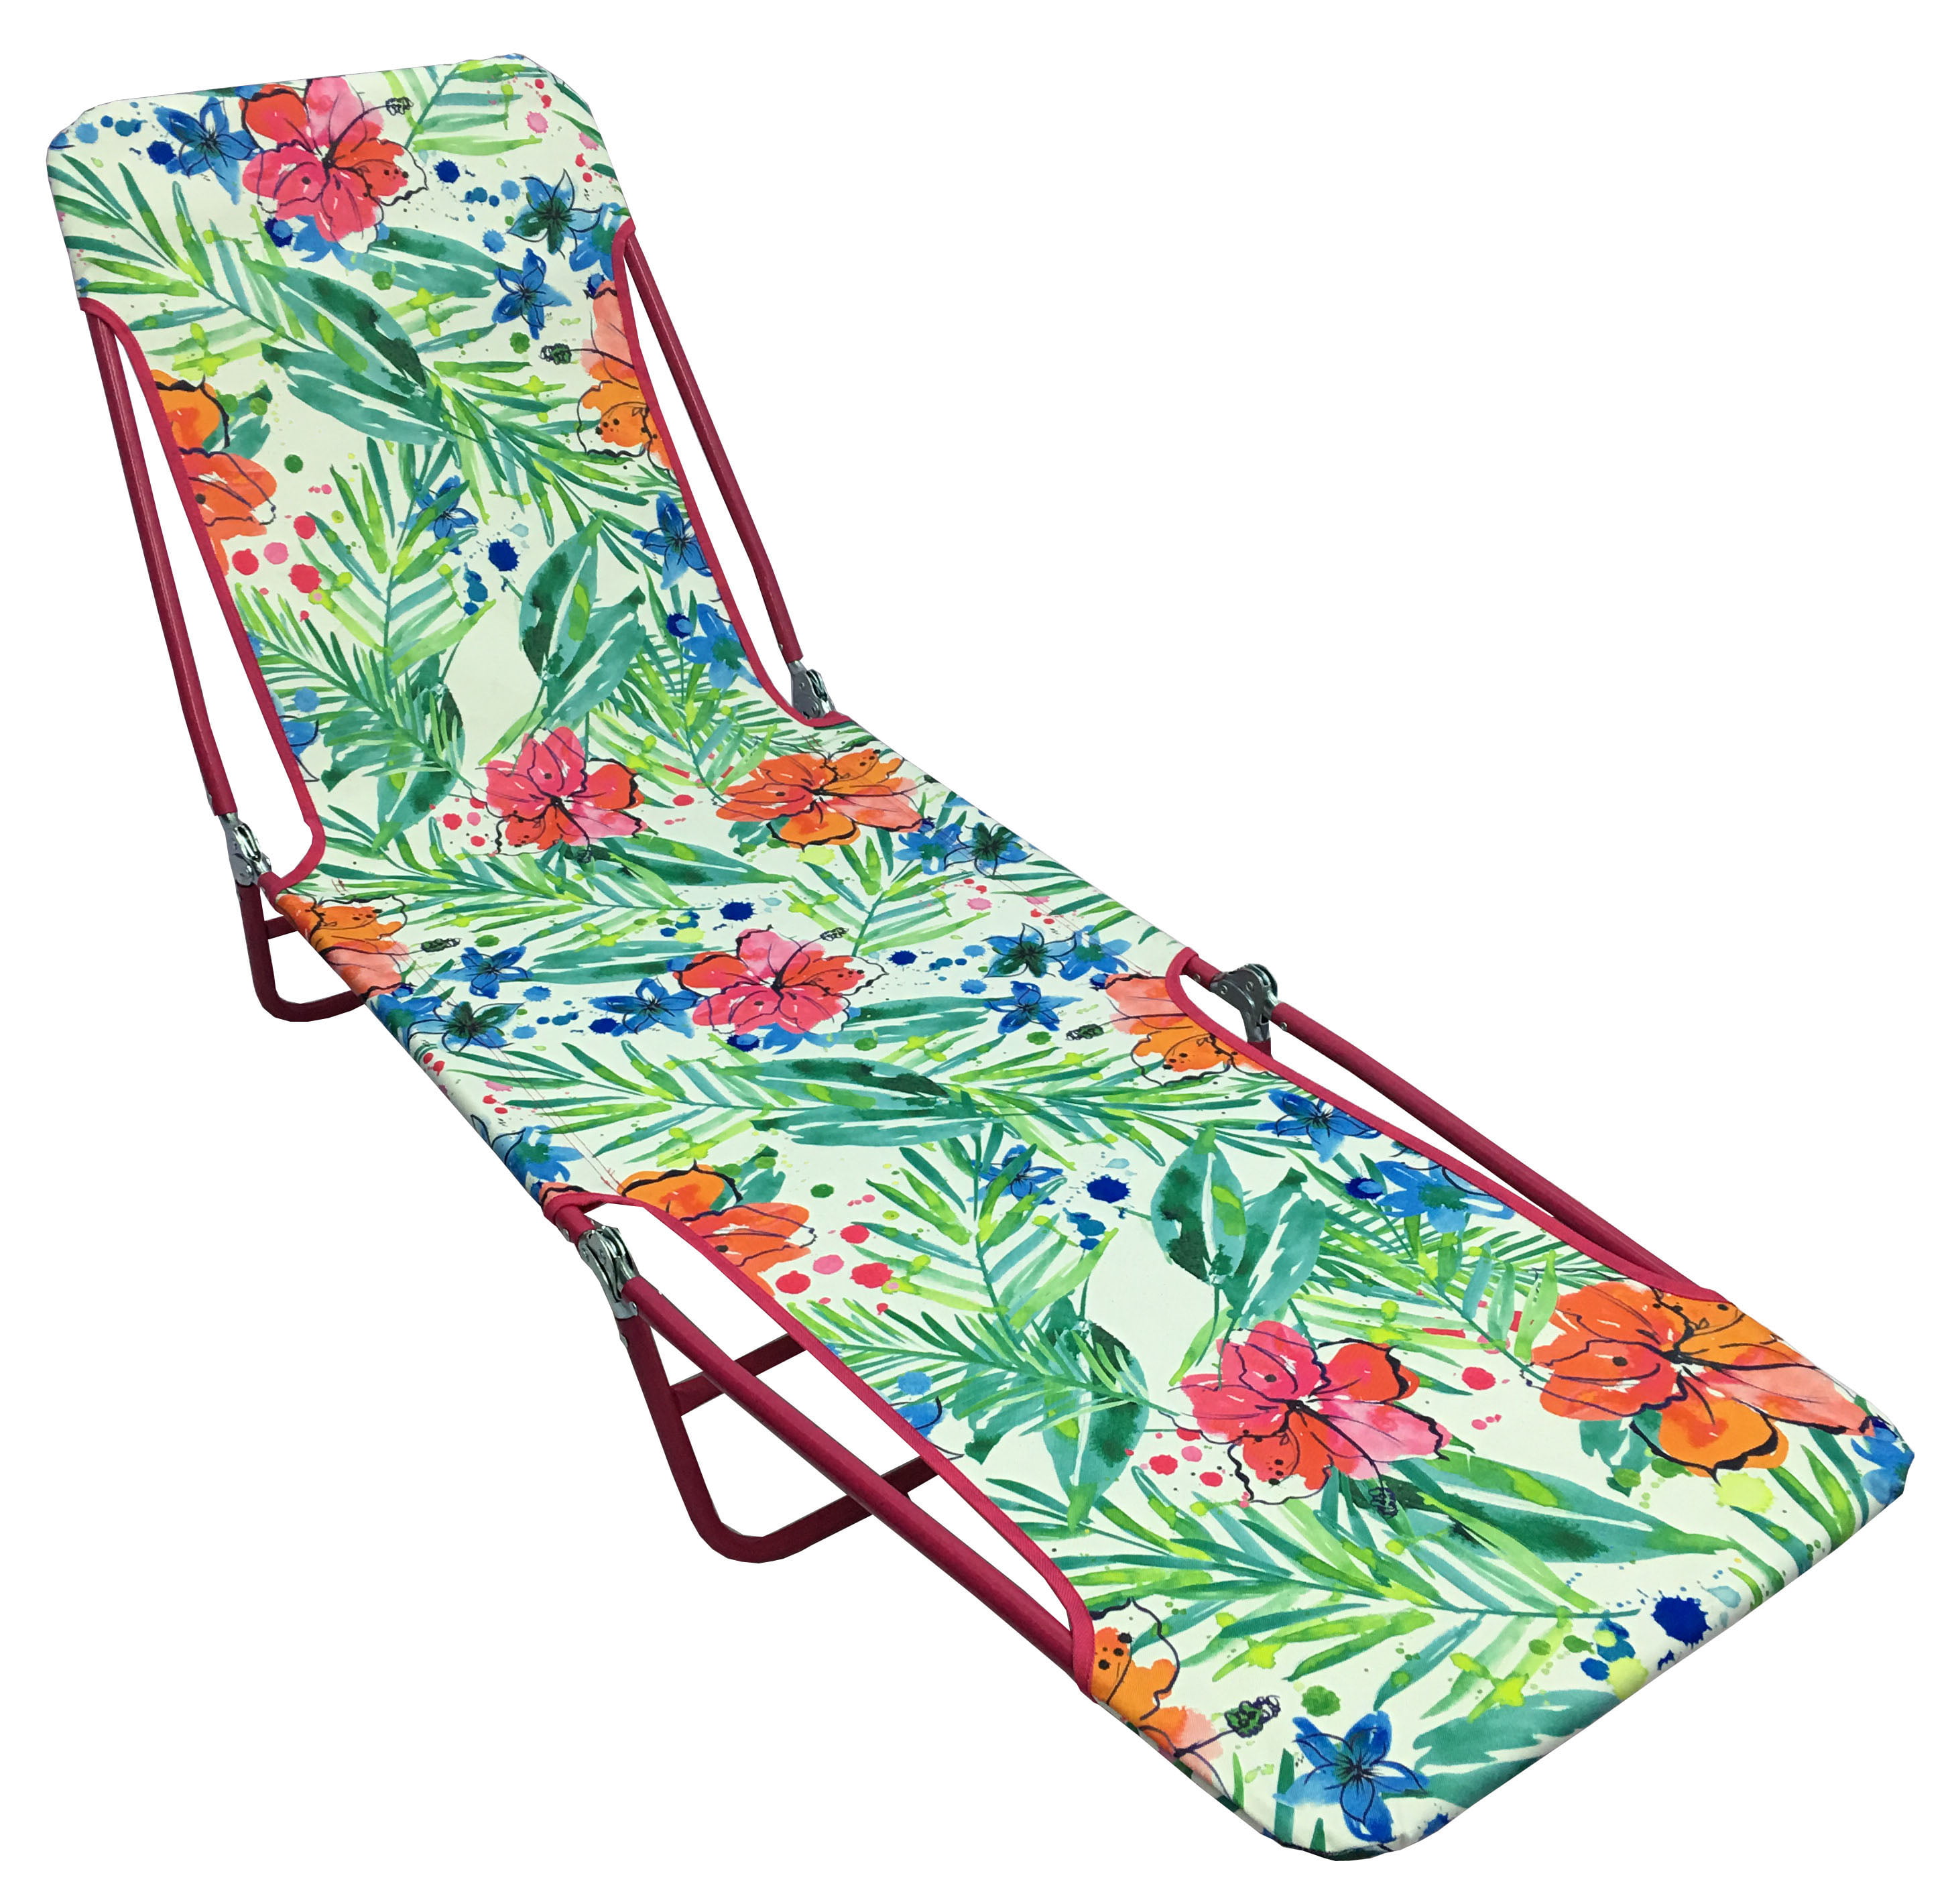 Creatice Tri Fold Jelly Beach Chair with Simple Decor